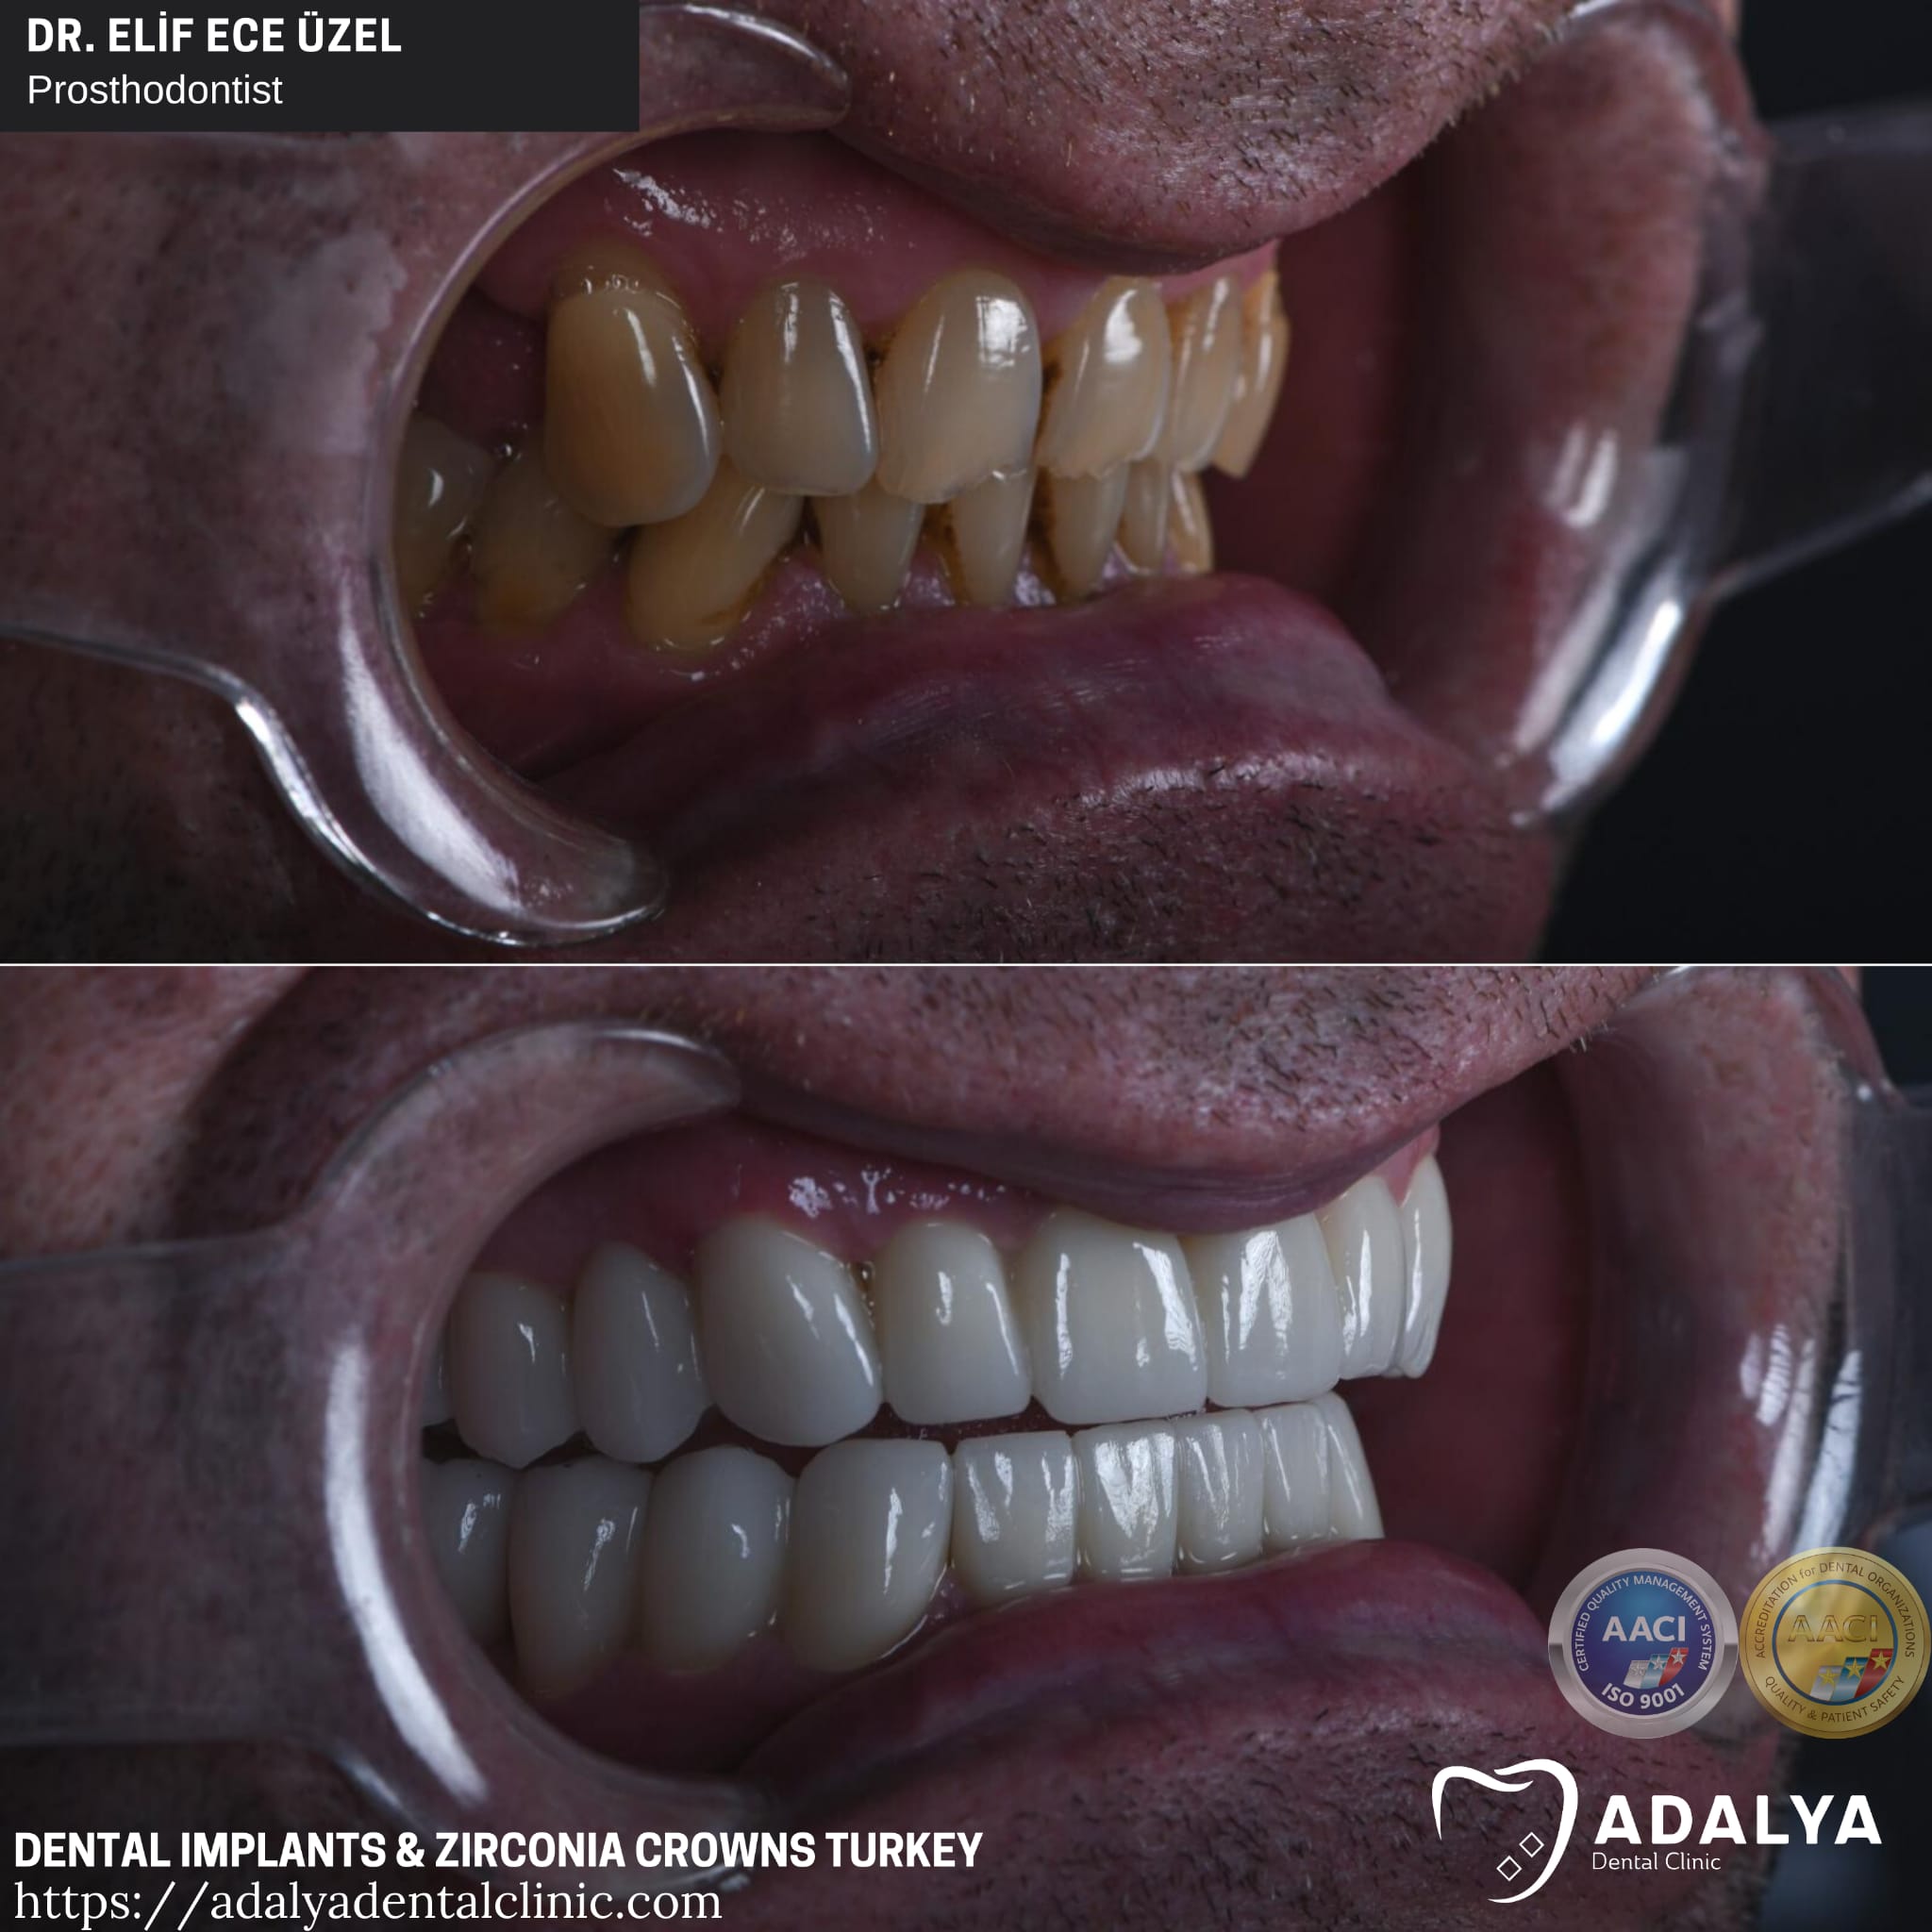 dental implants antalya turkey price packages cost adalya